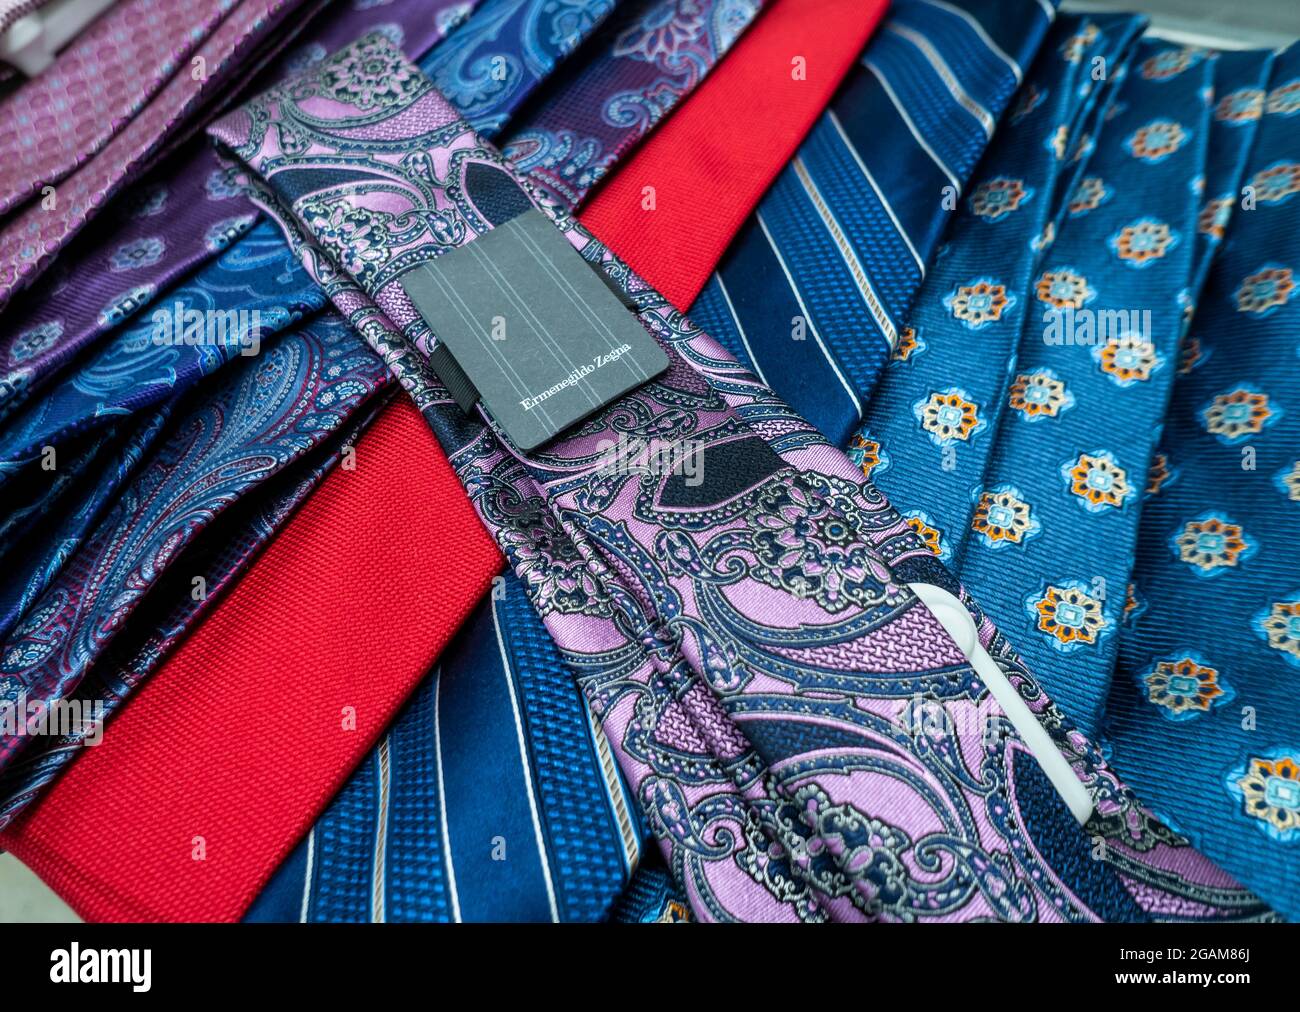 Una corbata Ermenegildo Zegna se ve en una tienda de departamentos en Nueva York con otras marcas el martes, 20 de julio de 2021. Ermenegildo Zegna es reportado ser público a